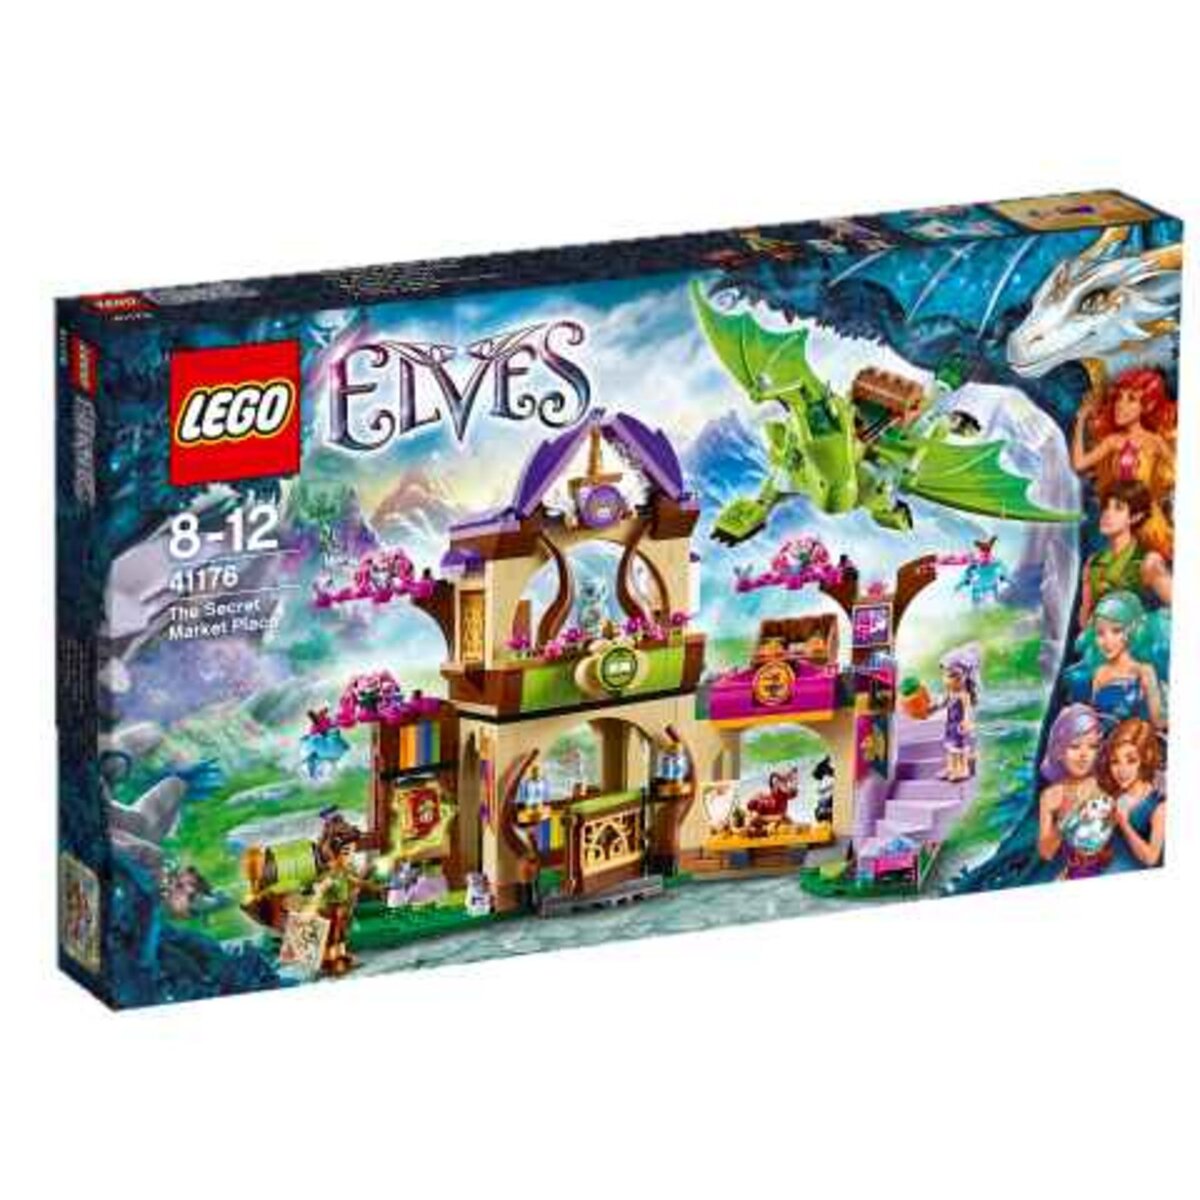 LEGO Elves 41176 - Le marché secret